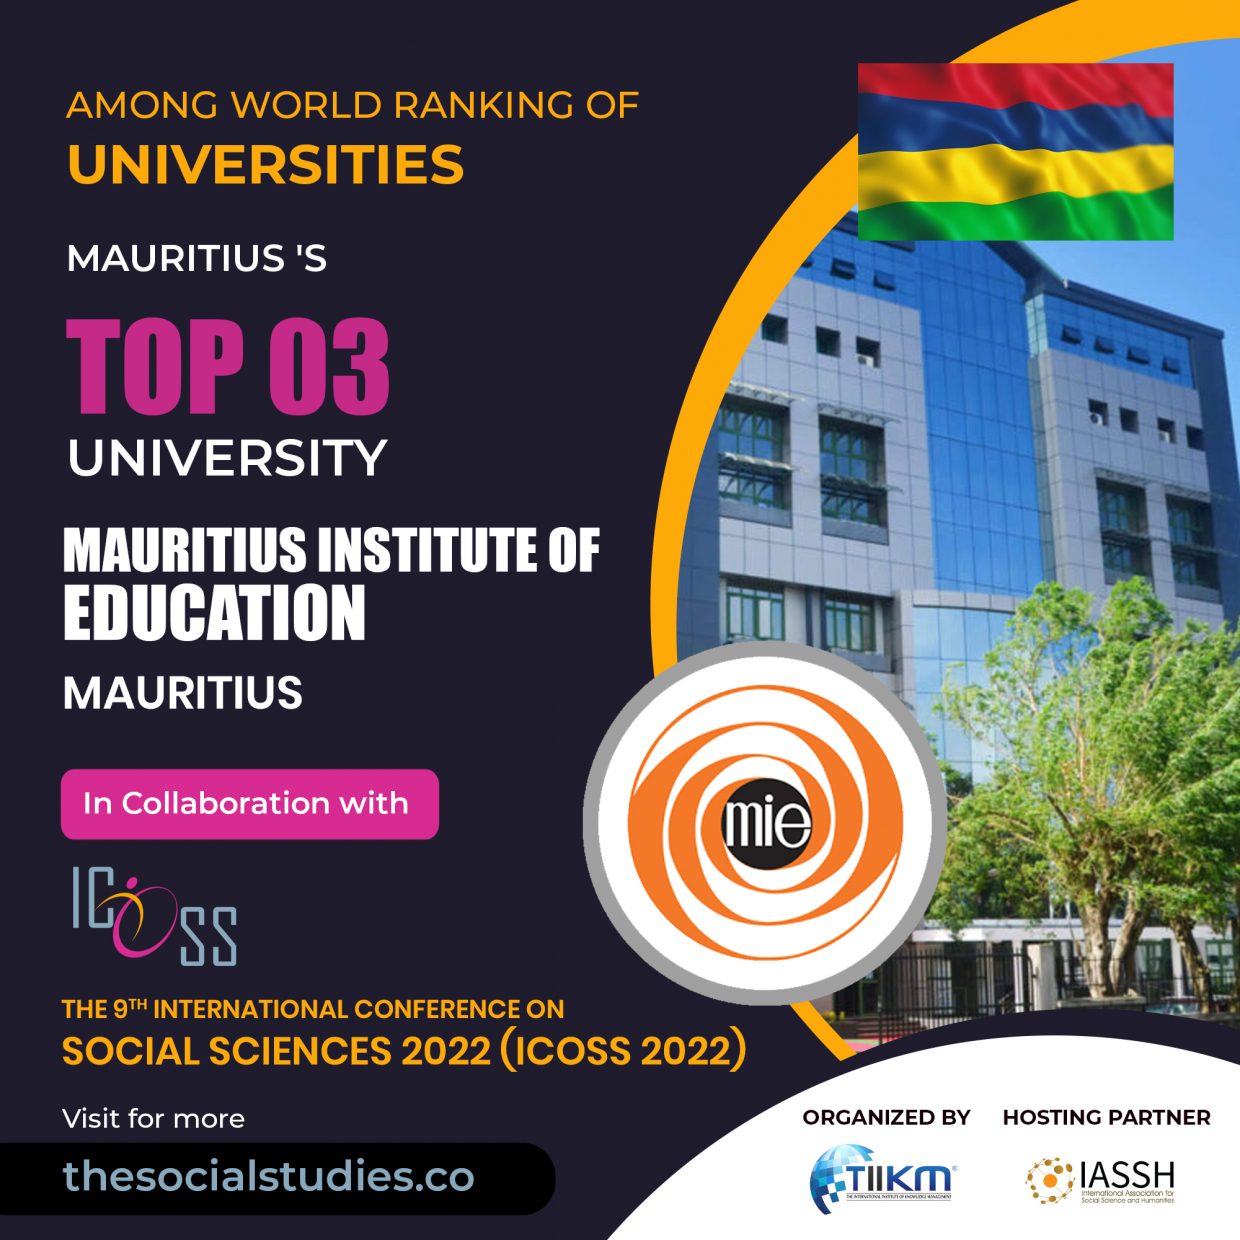 Mauritius Institute of Education